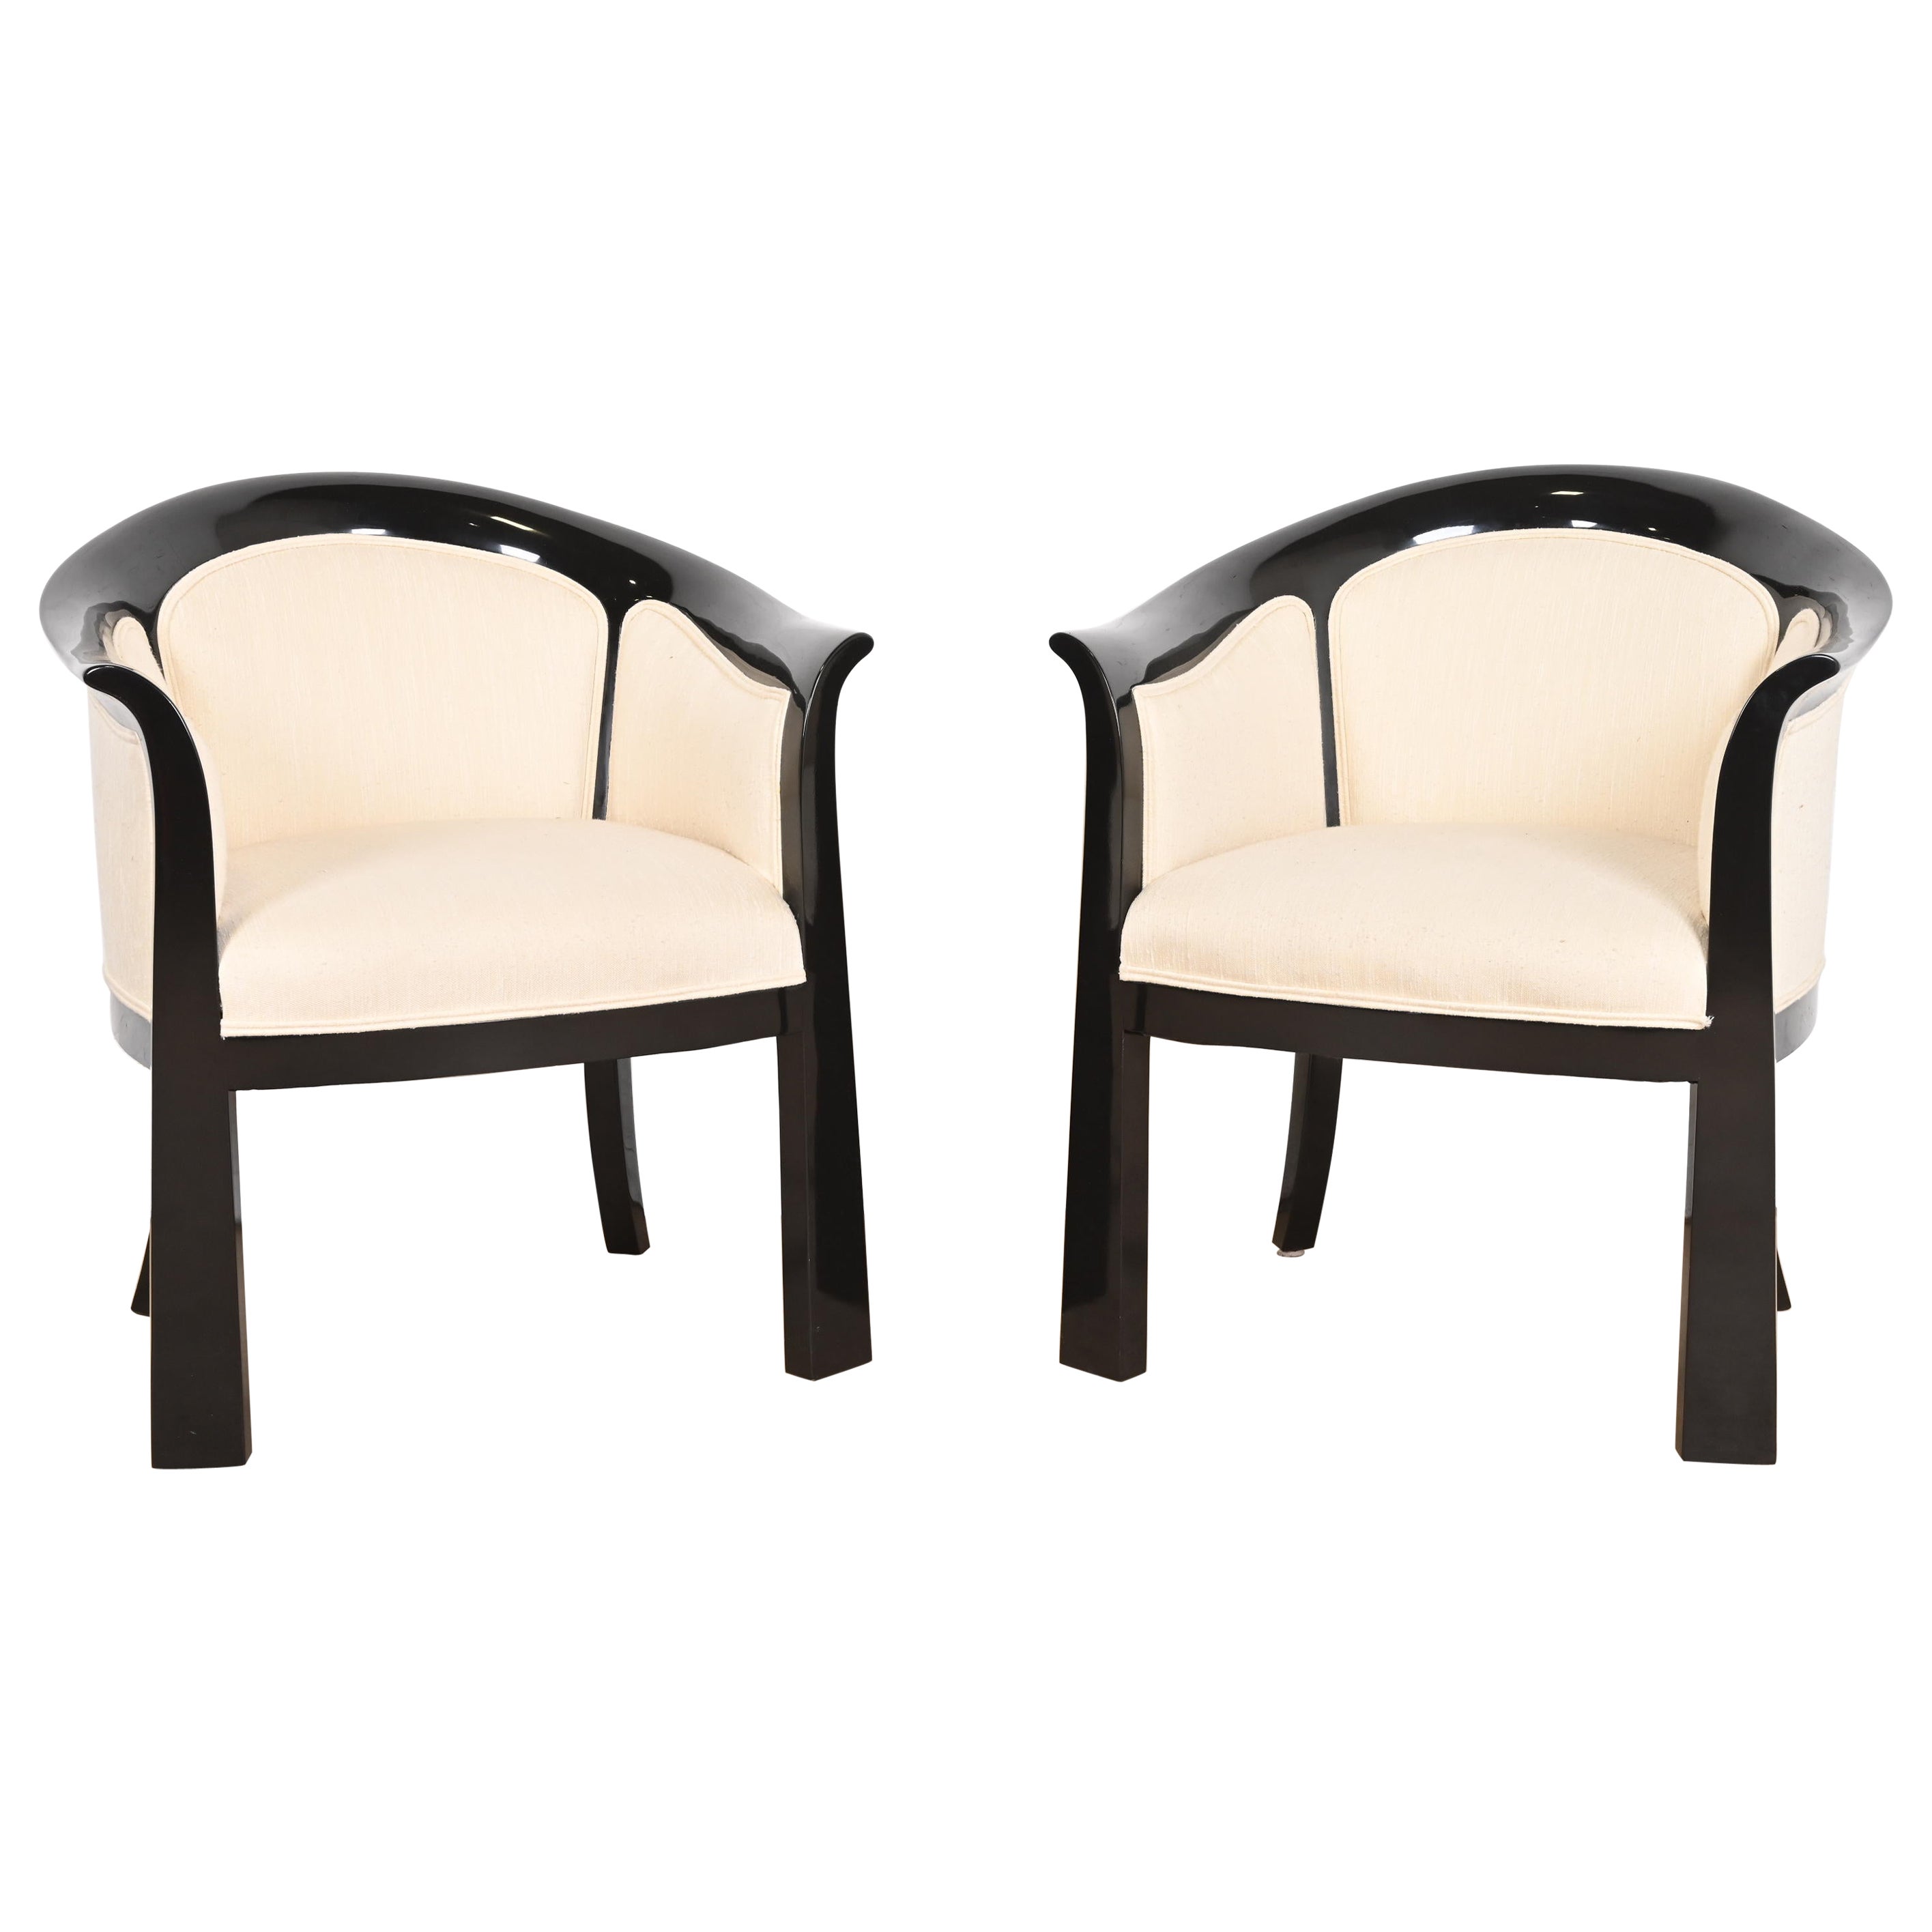 Interior Crafts Modernity Art Deco Paire de chaises baignoires laquées noires